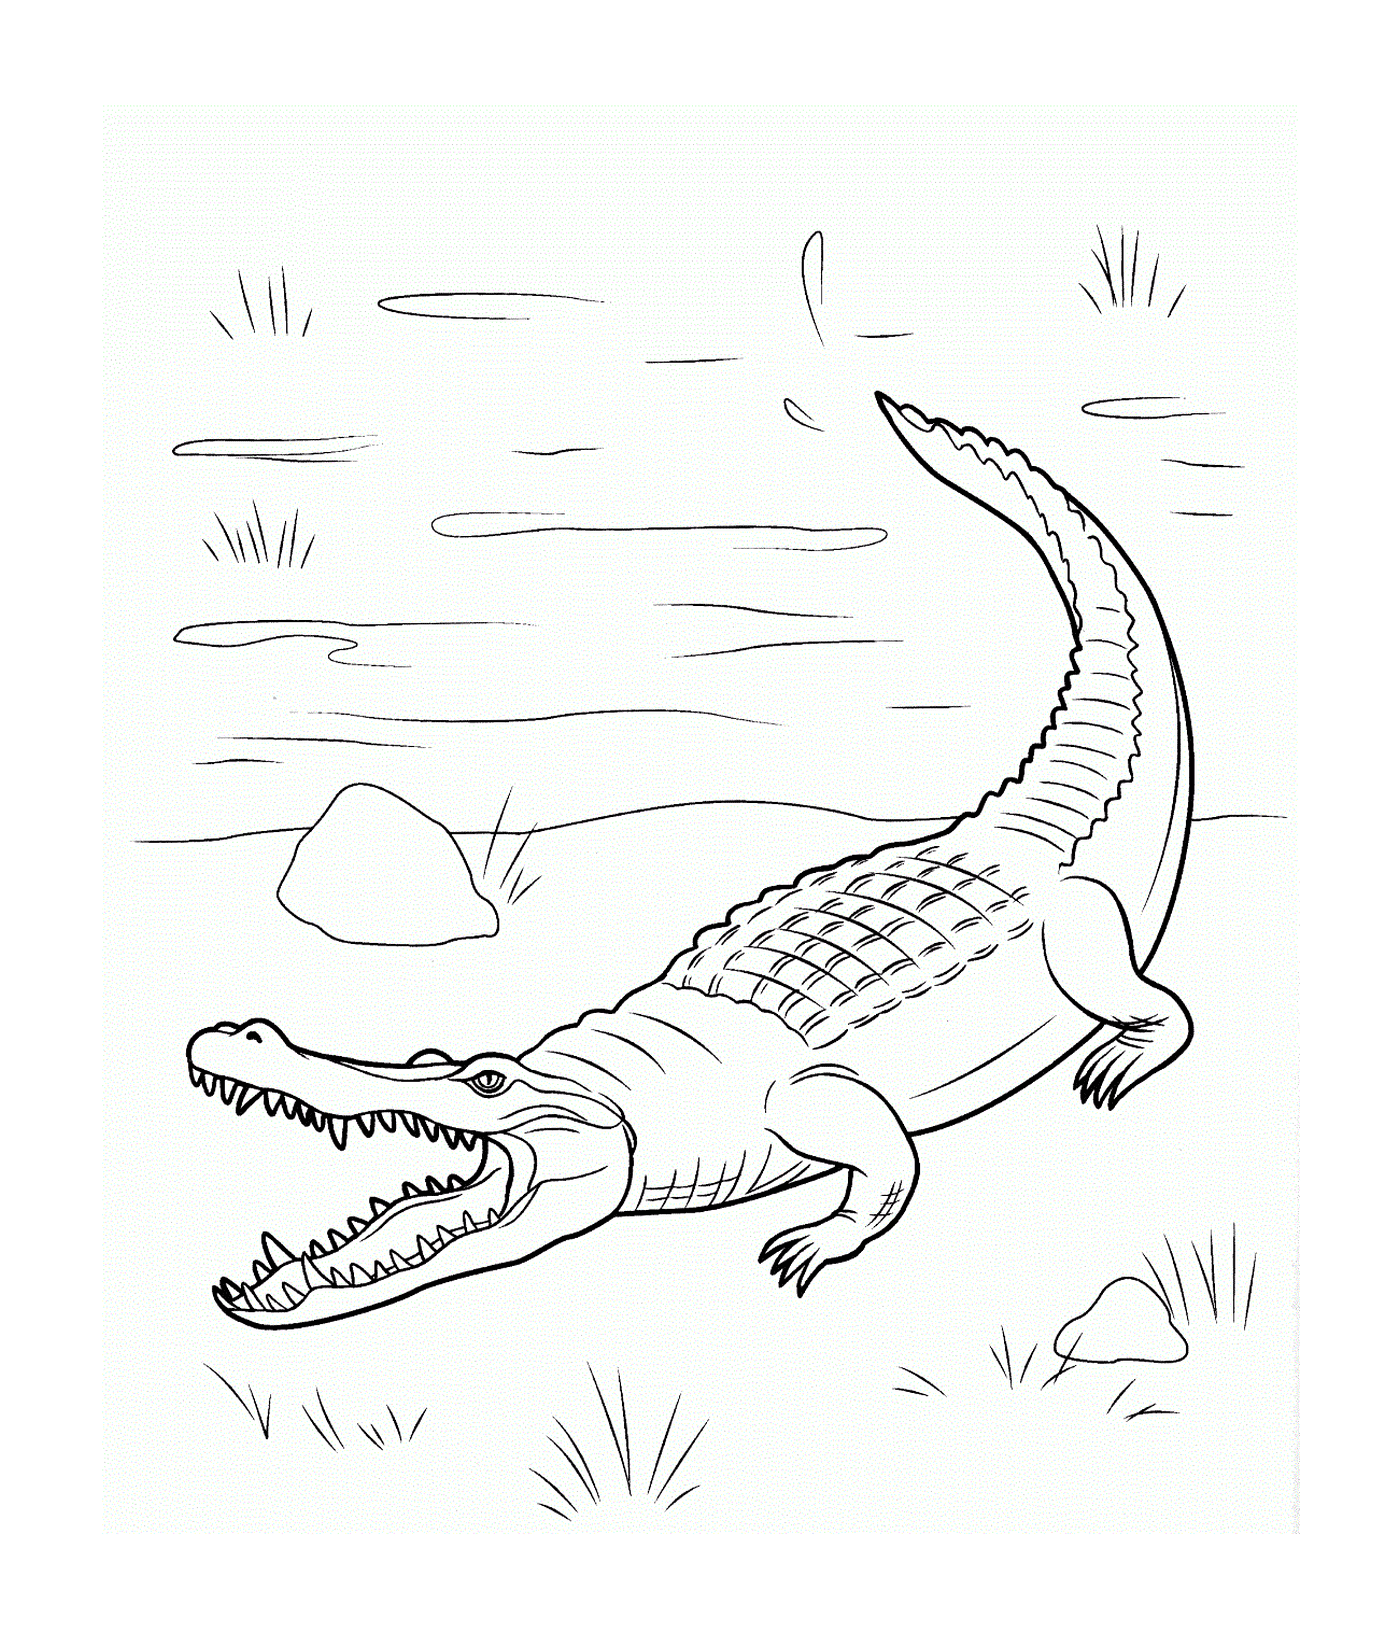  Морской крокодил семьи Крокодилида, плавает в воде 